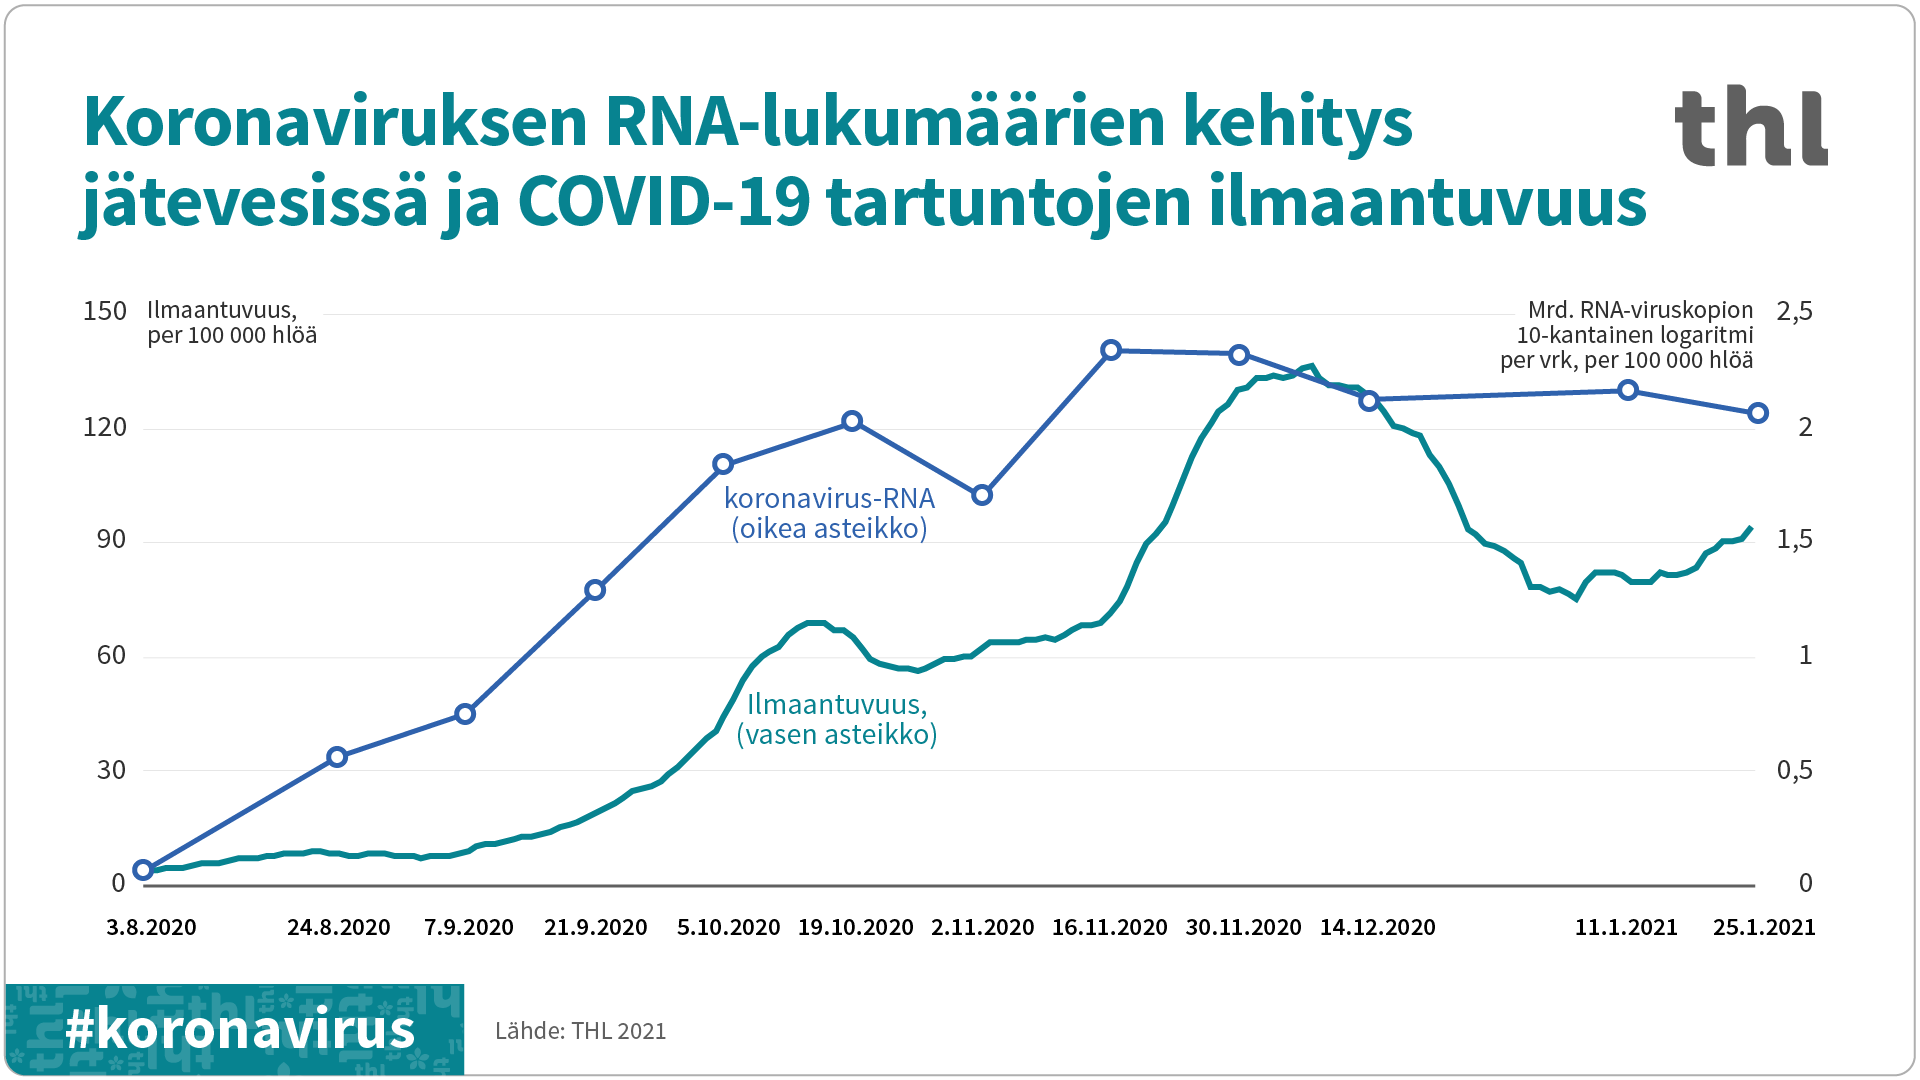 Kuvaaja, jossa RNA-viruskopioiden lukumäärä seuraa koronavirustartuntojen ilmaantuvuutta elokuusta 2020 tammikuuhun 2021. 